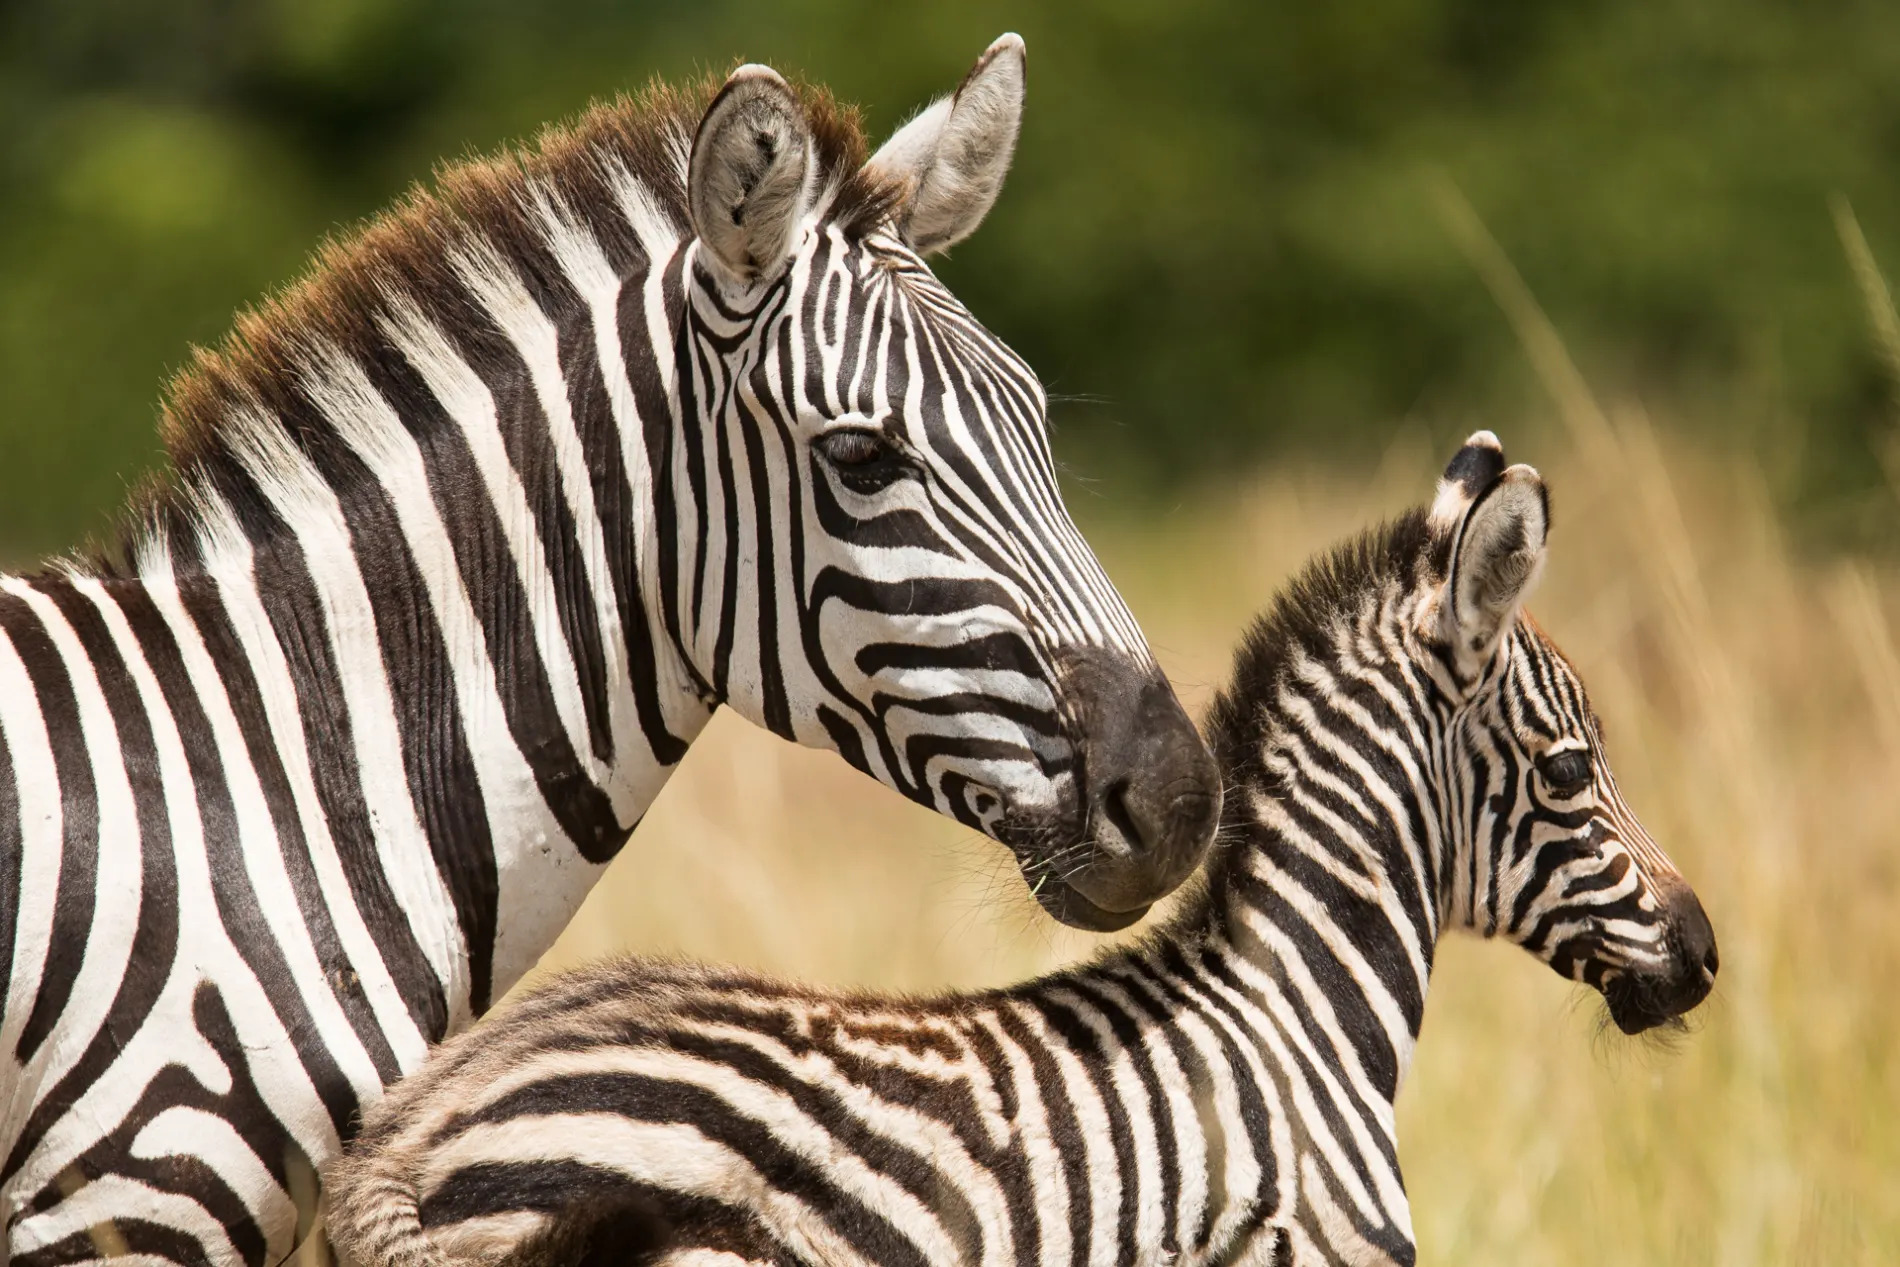 Zebra and baby